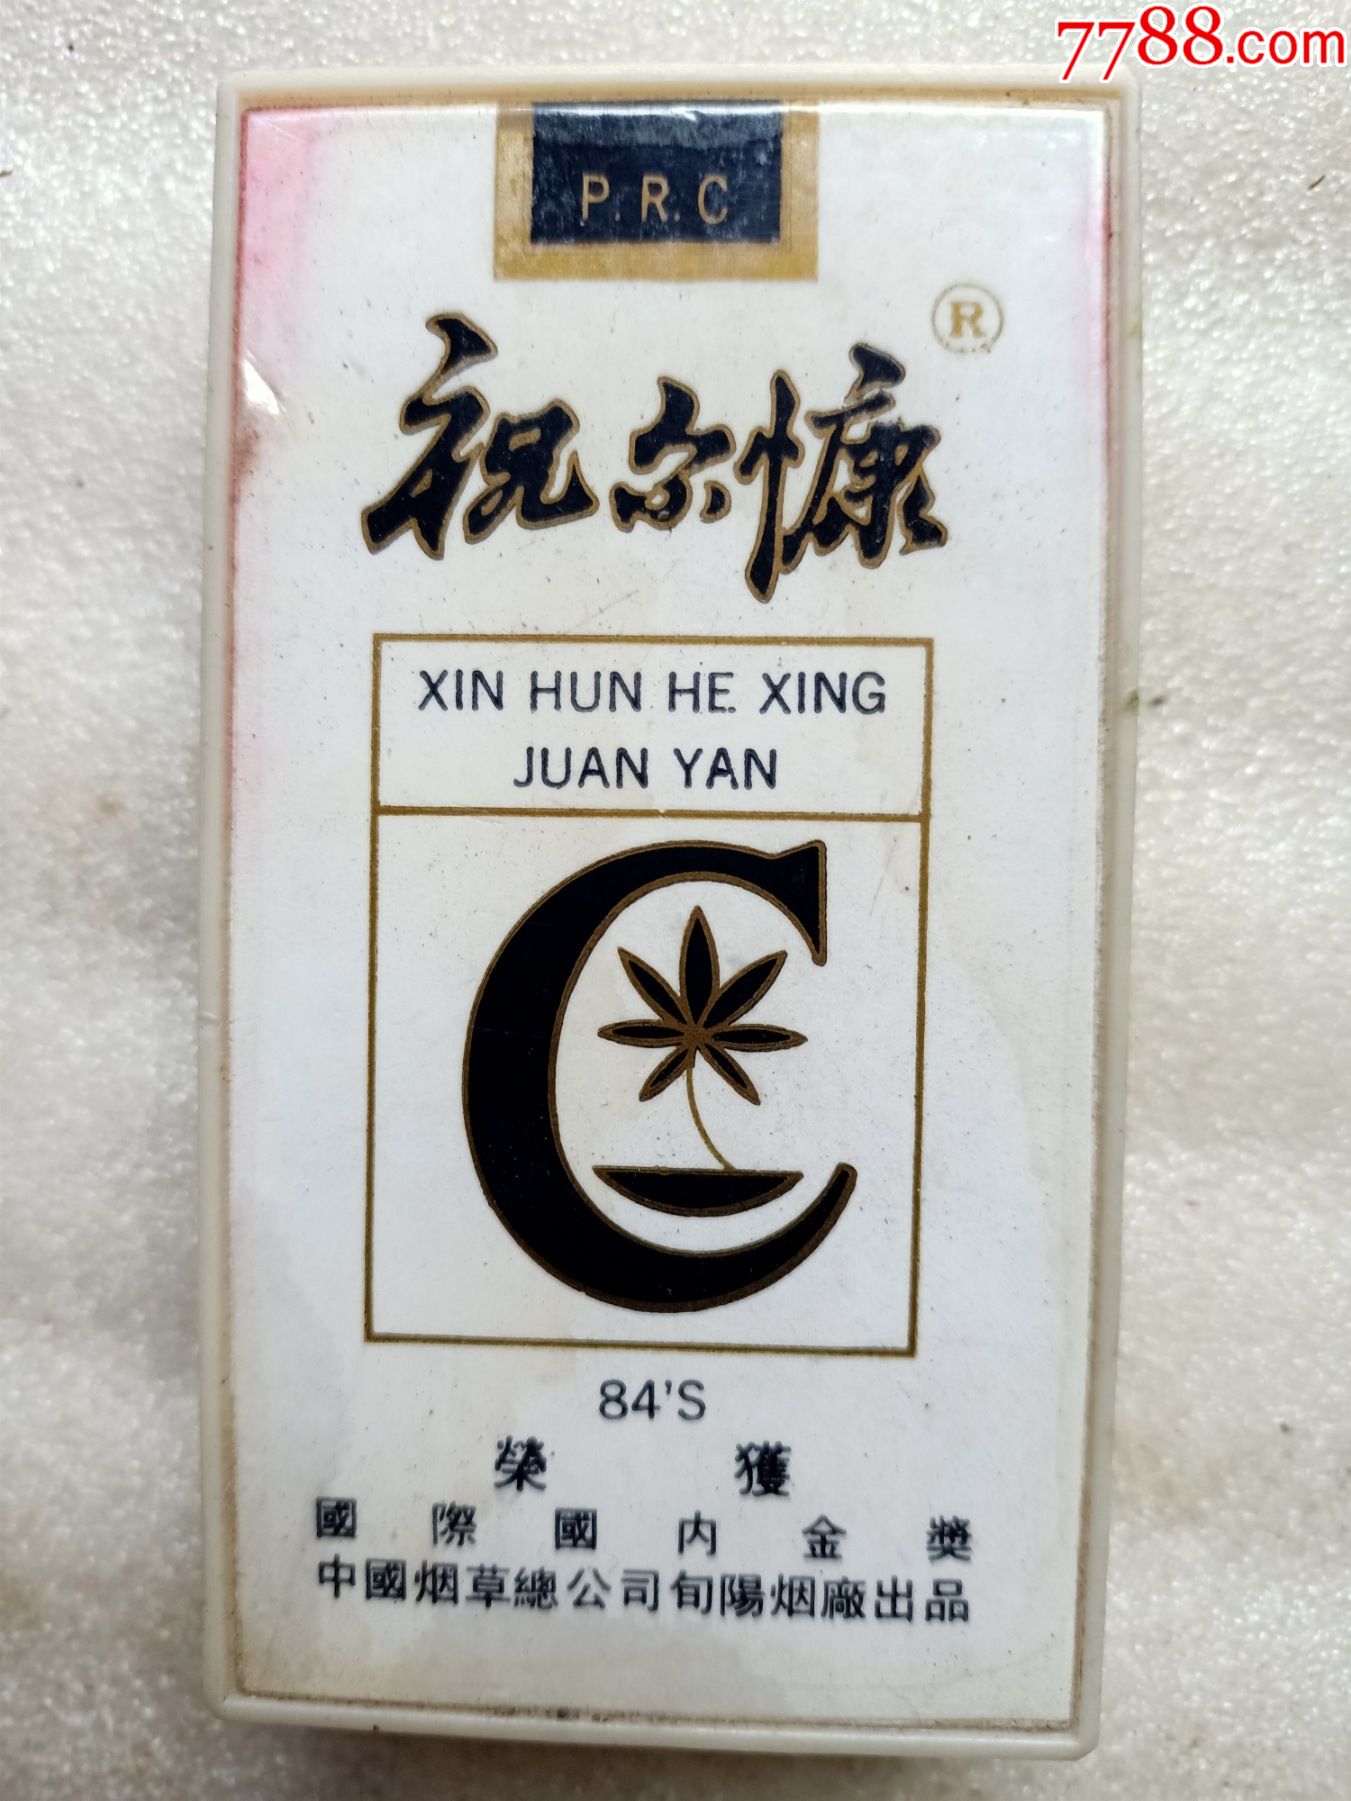 北京天安门祝尔康烟盒b34使用后可以当烟盒使用推拉可自动取烟如图